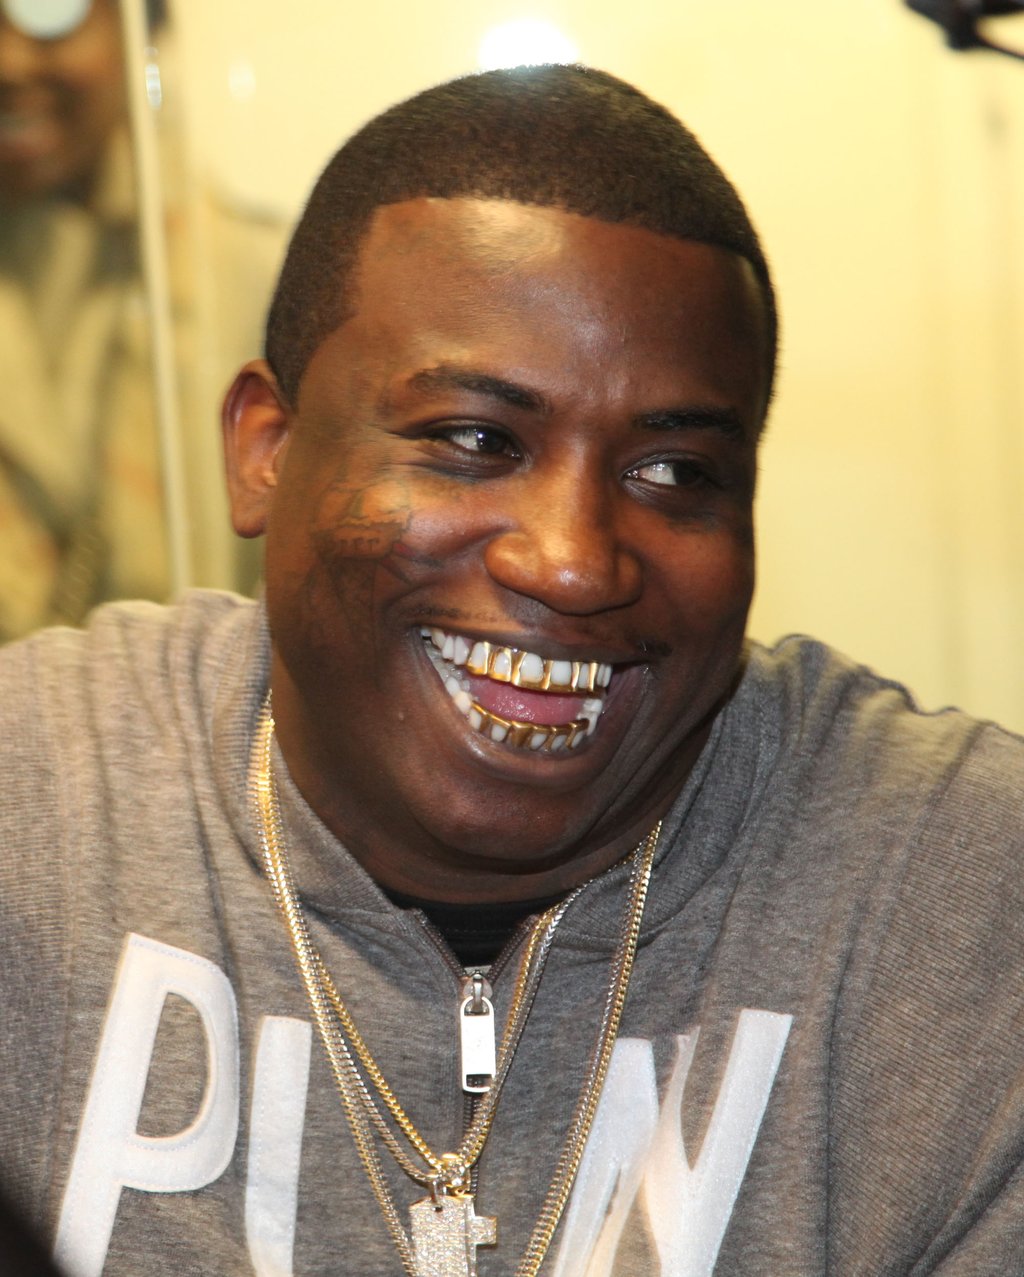 GucciisFree: Rapper Gucci Mane is Fresh Outta Prison | BellaNaija